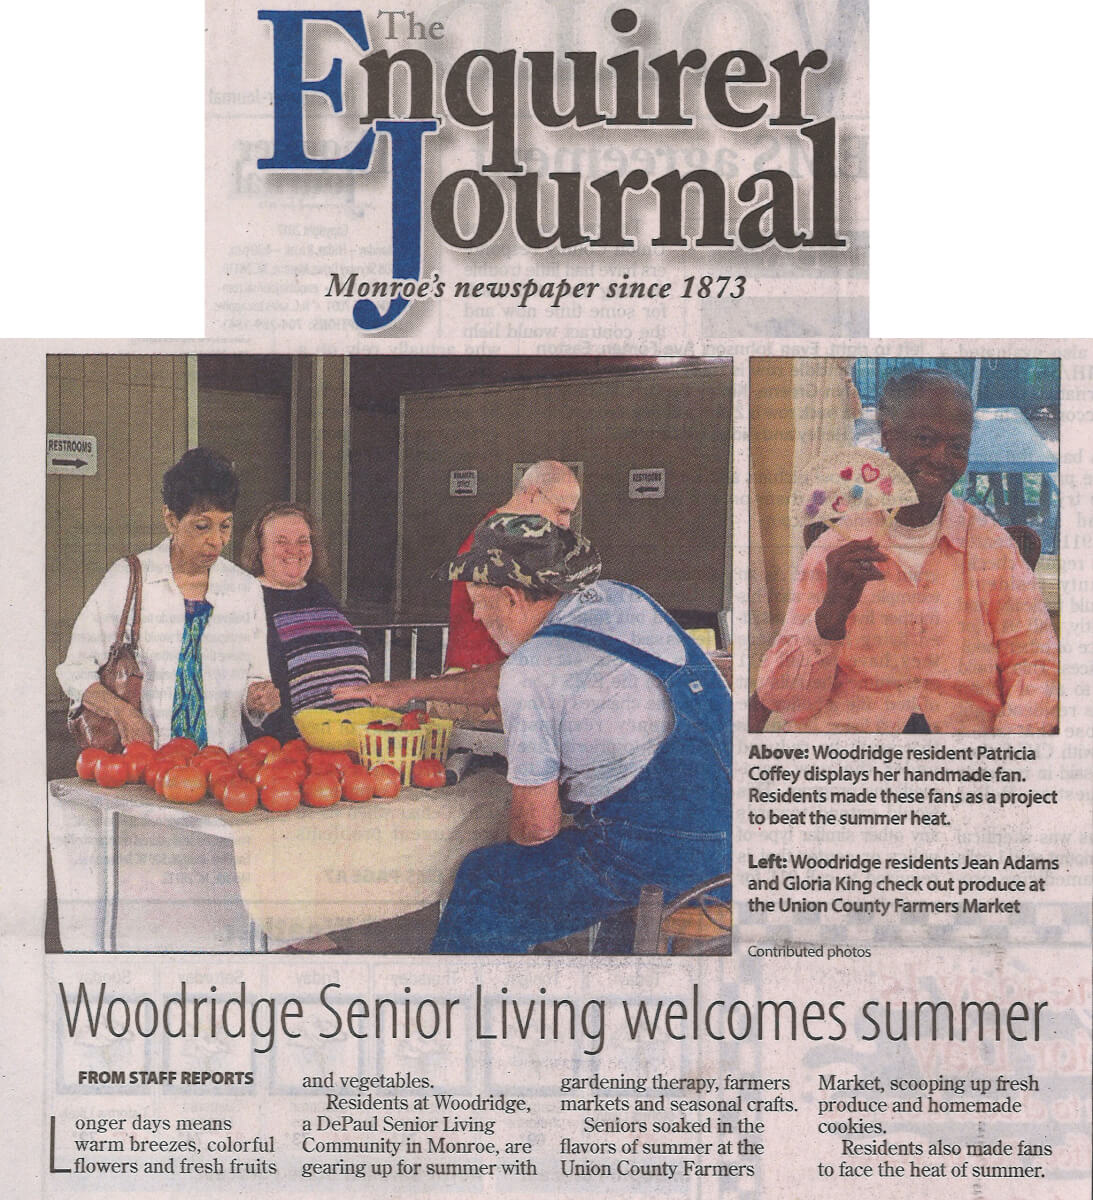 Woodridge Senior Living Welcomes Summer story in the Enquirer Journal 2017